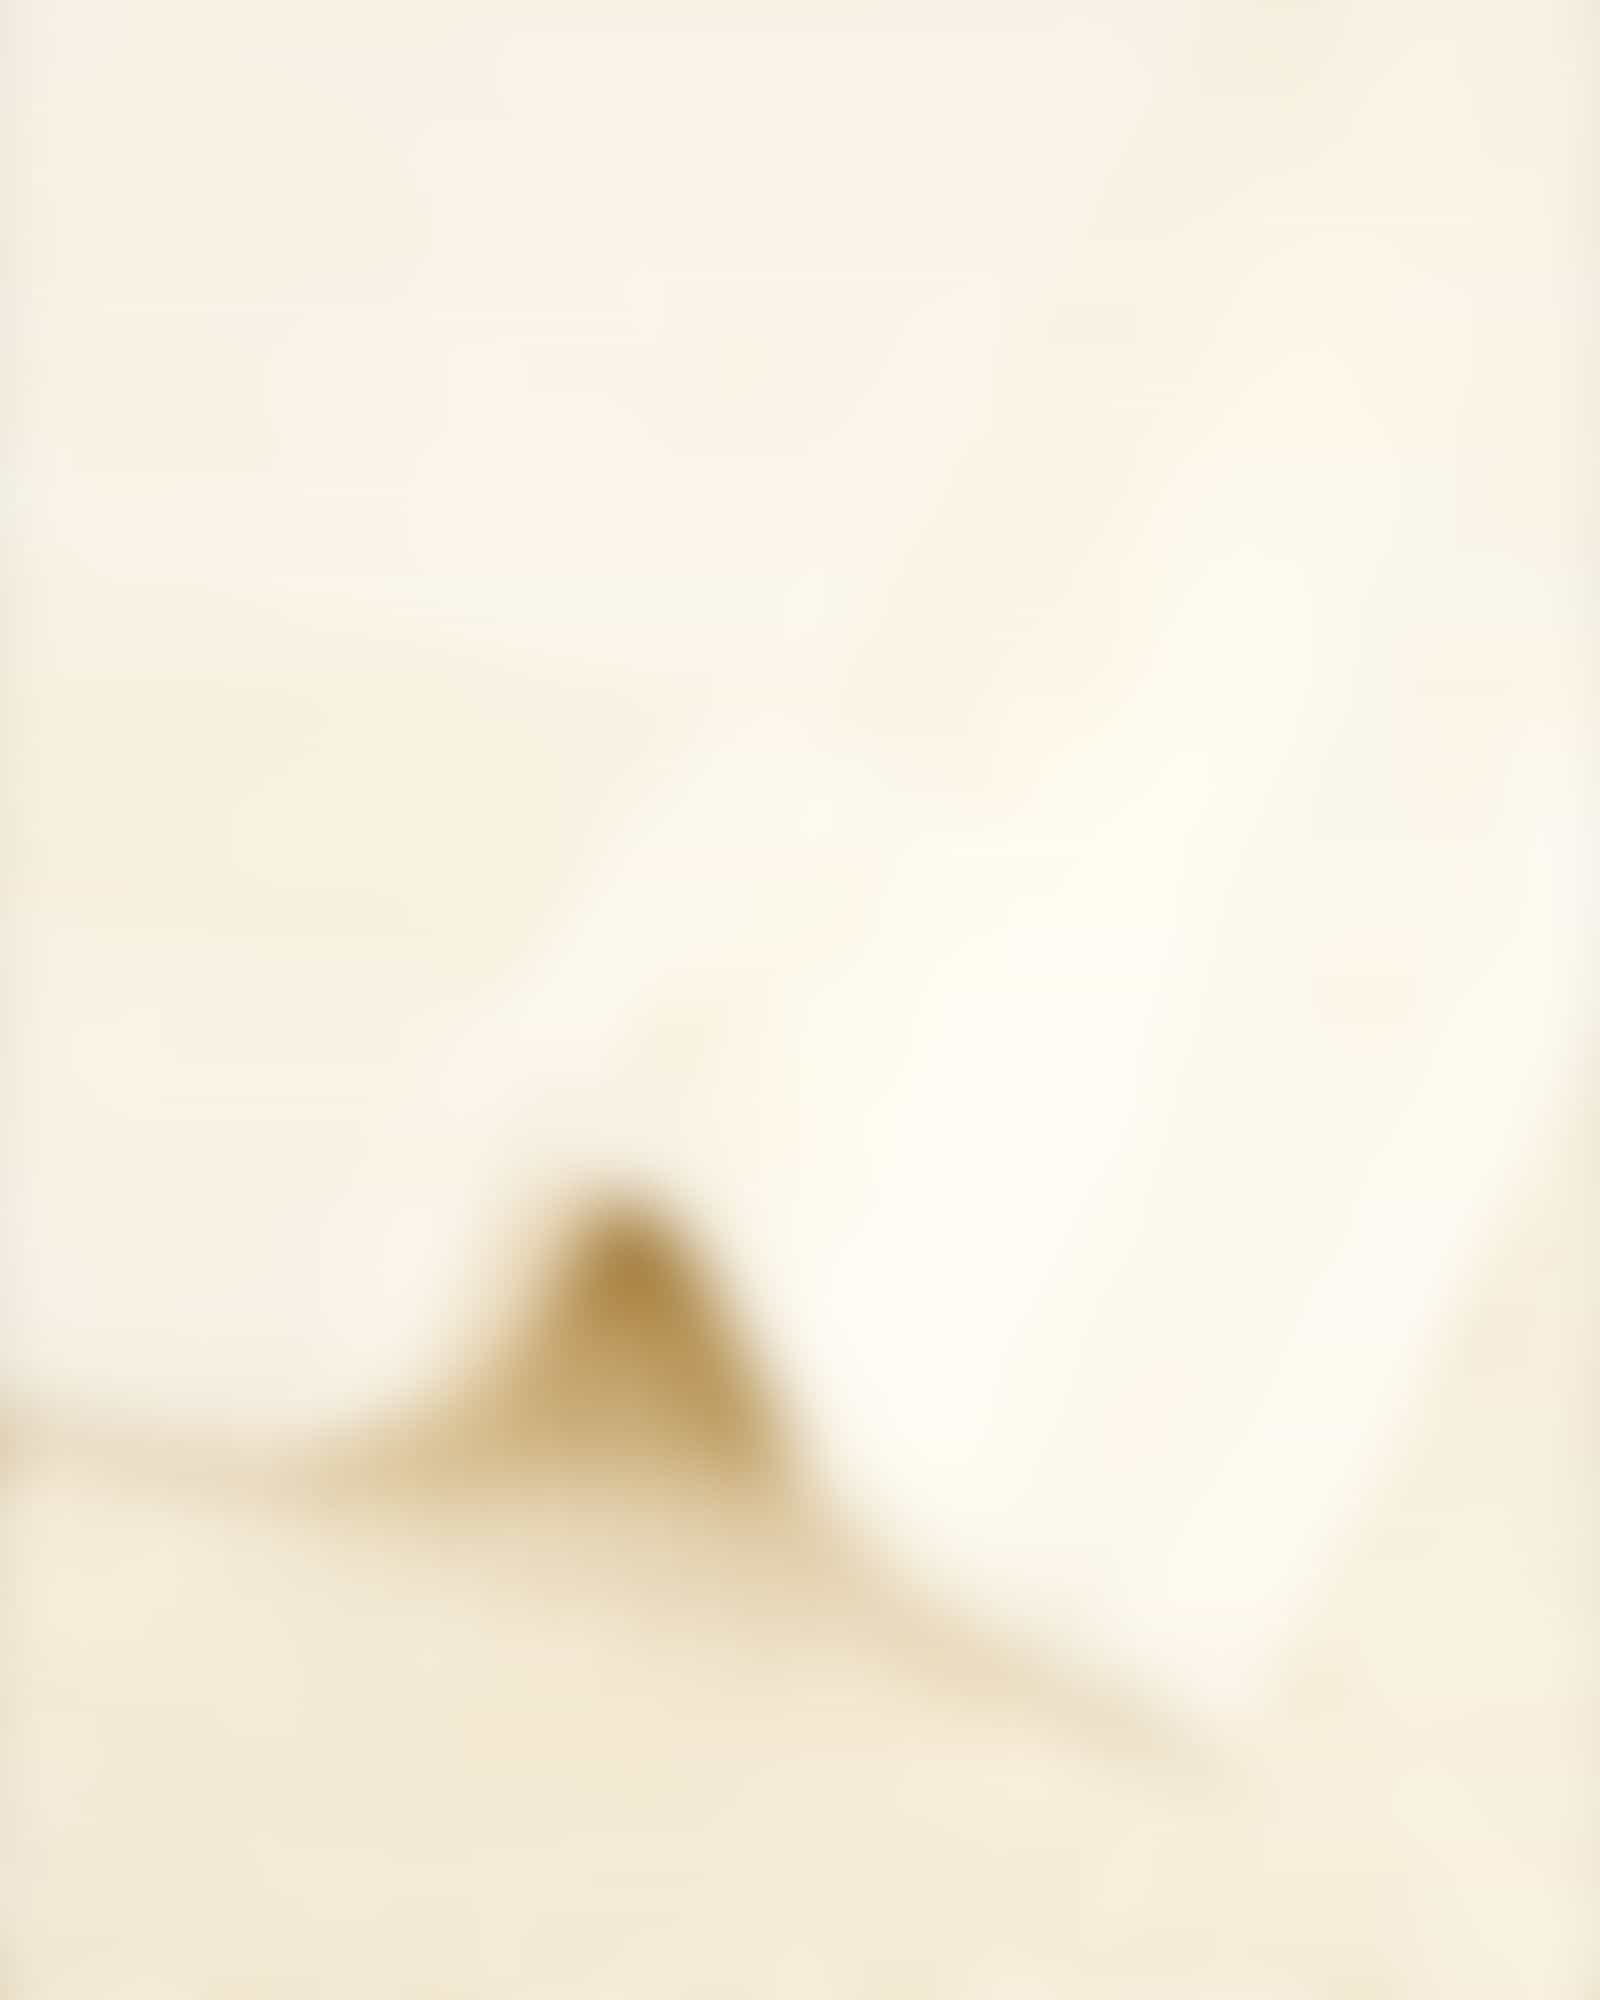 Cawö Home - Badteppich 1000 - Farbe: natur - 351 - 70x120 cm